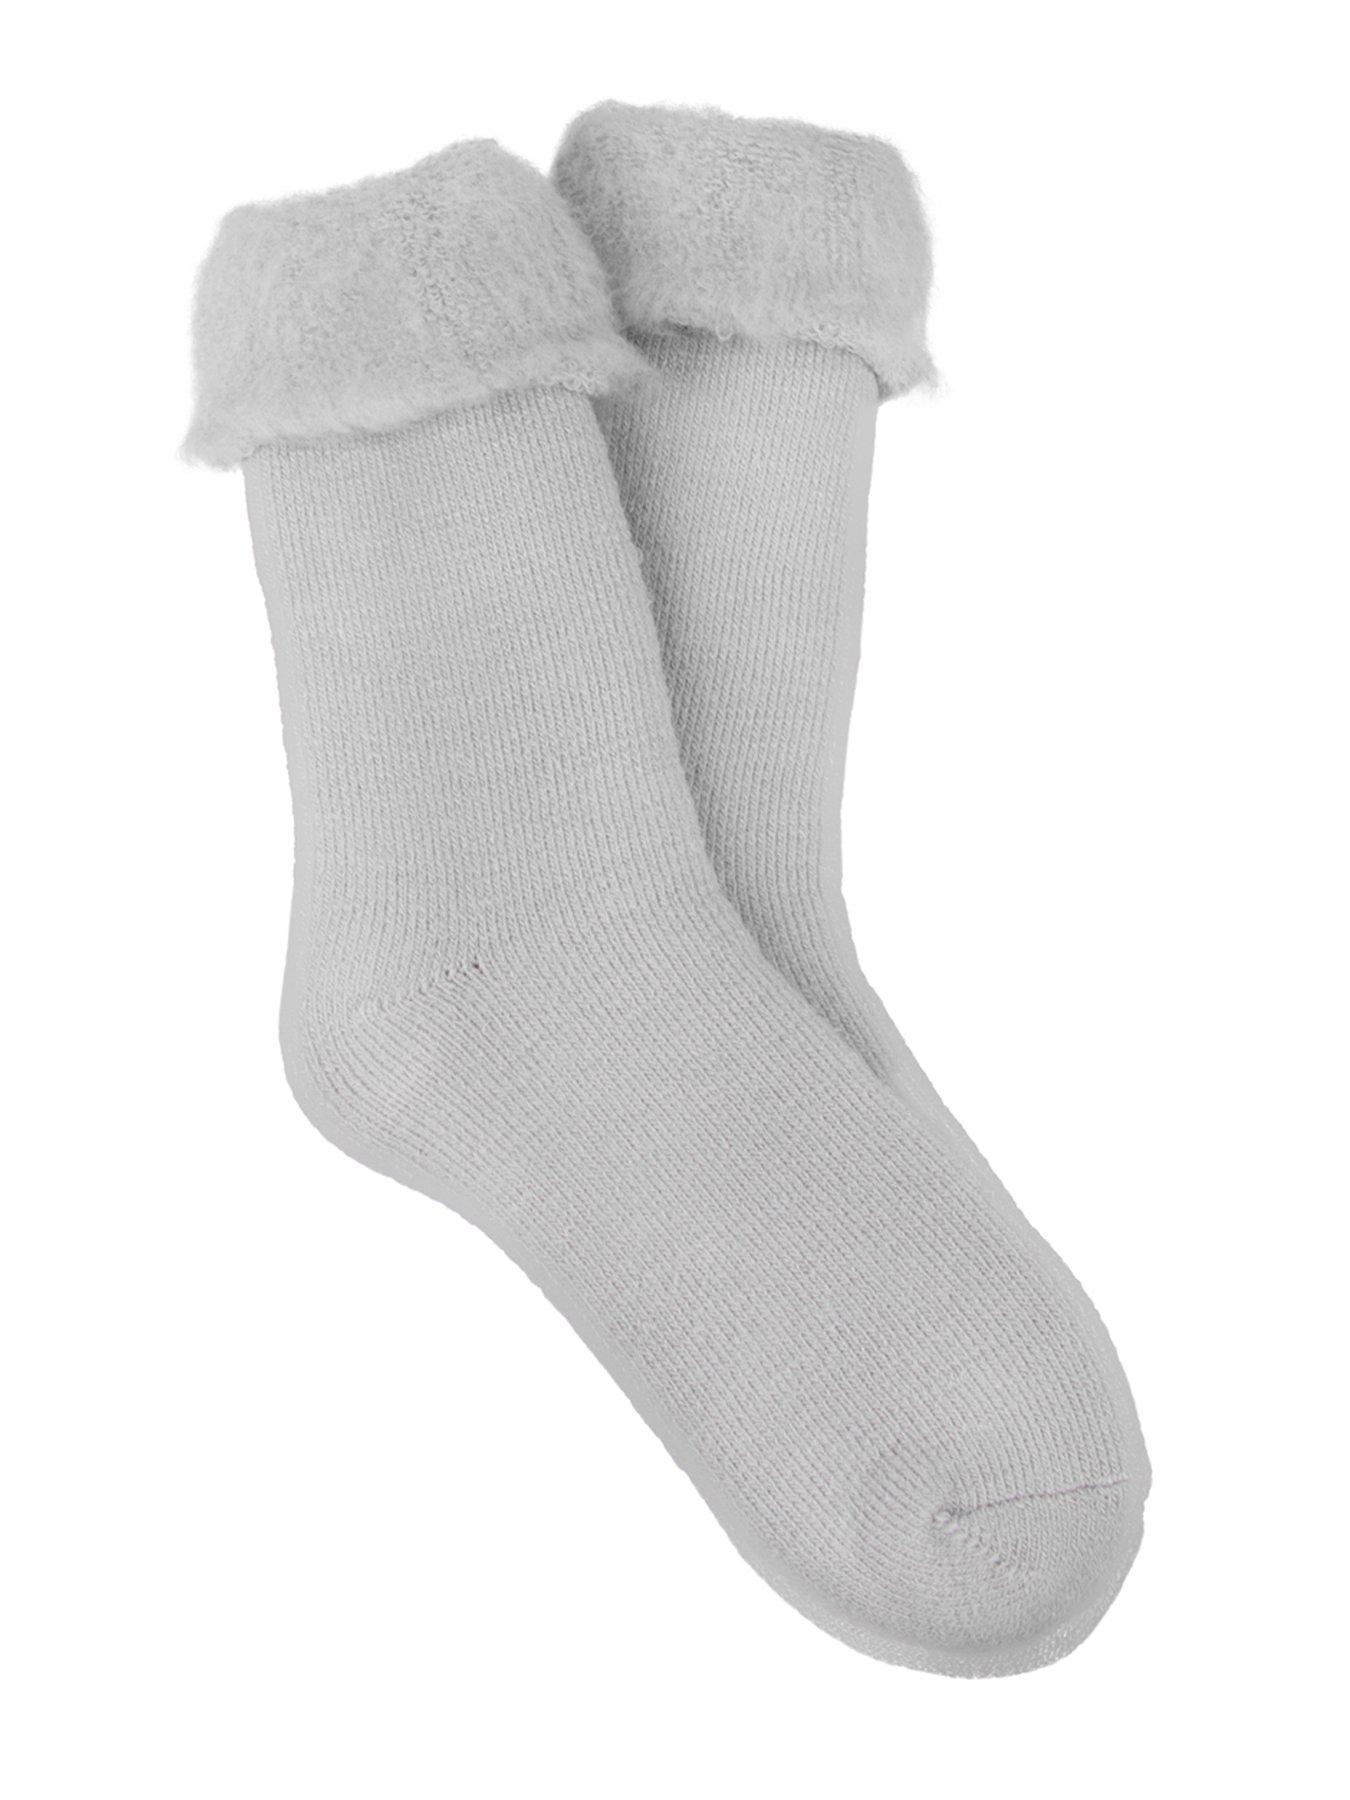 72 Pairs Furry Slipper Socks For Women Kitten Fluffy And Sherpa Socks - Womens  Thermal Socks - at 